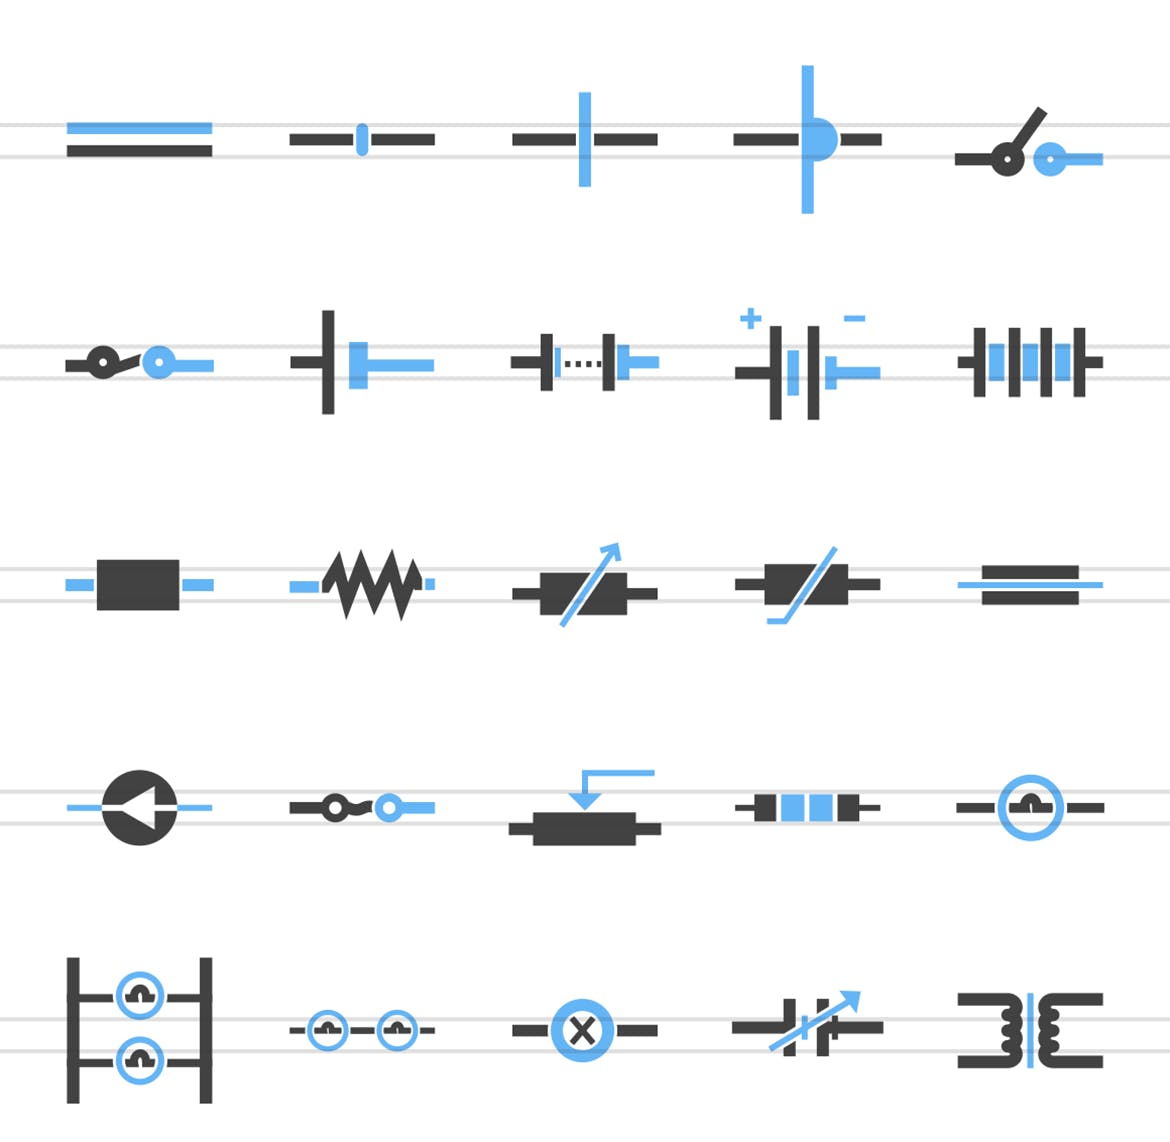 50枚电路线路板主题蓝黑色矢量非凡图库精选图标 50 Electric Circuits Blue & Black Icons插图(1)